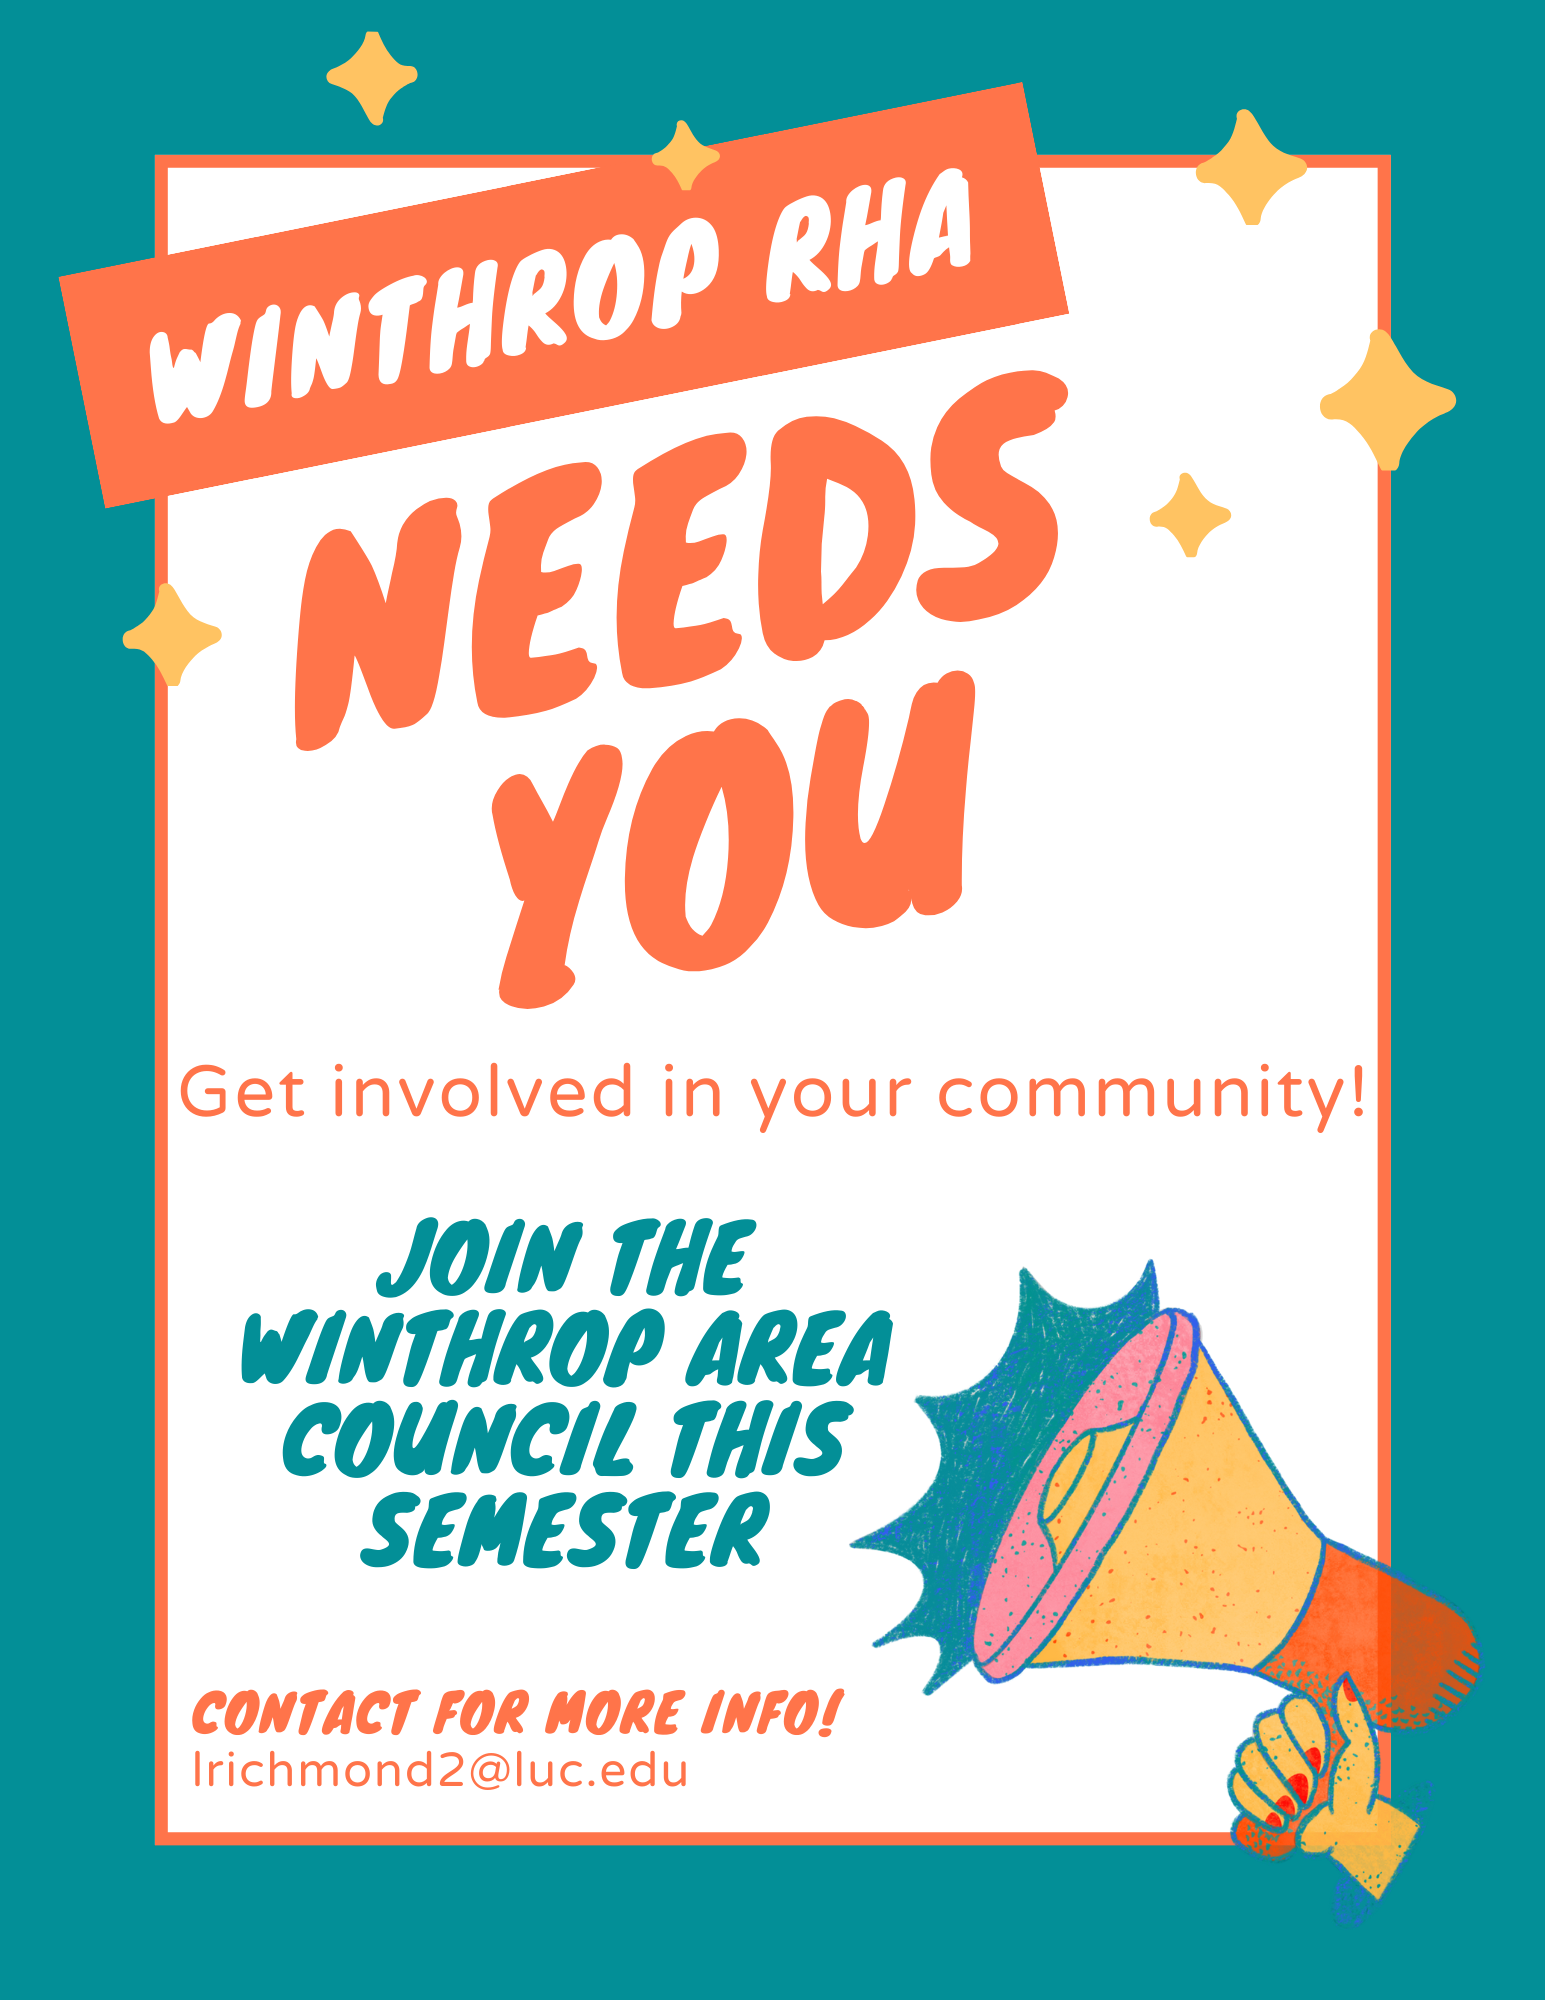 Call for Winthrop RHA members